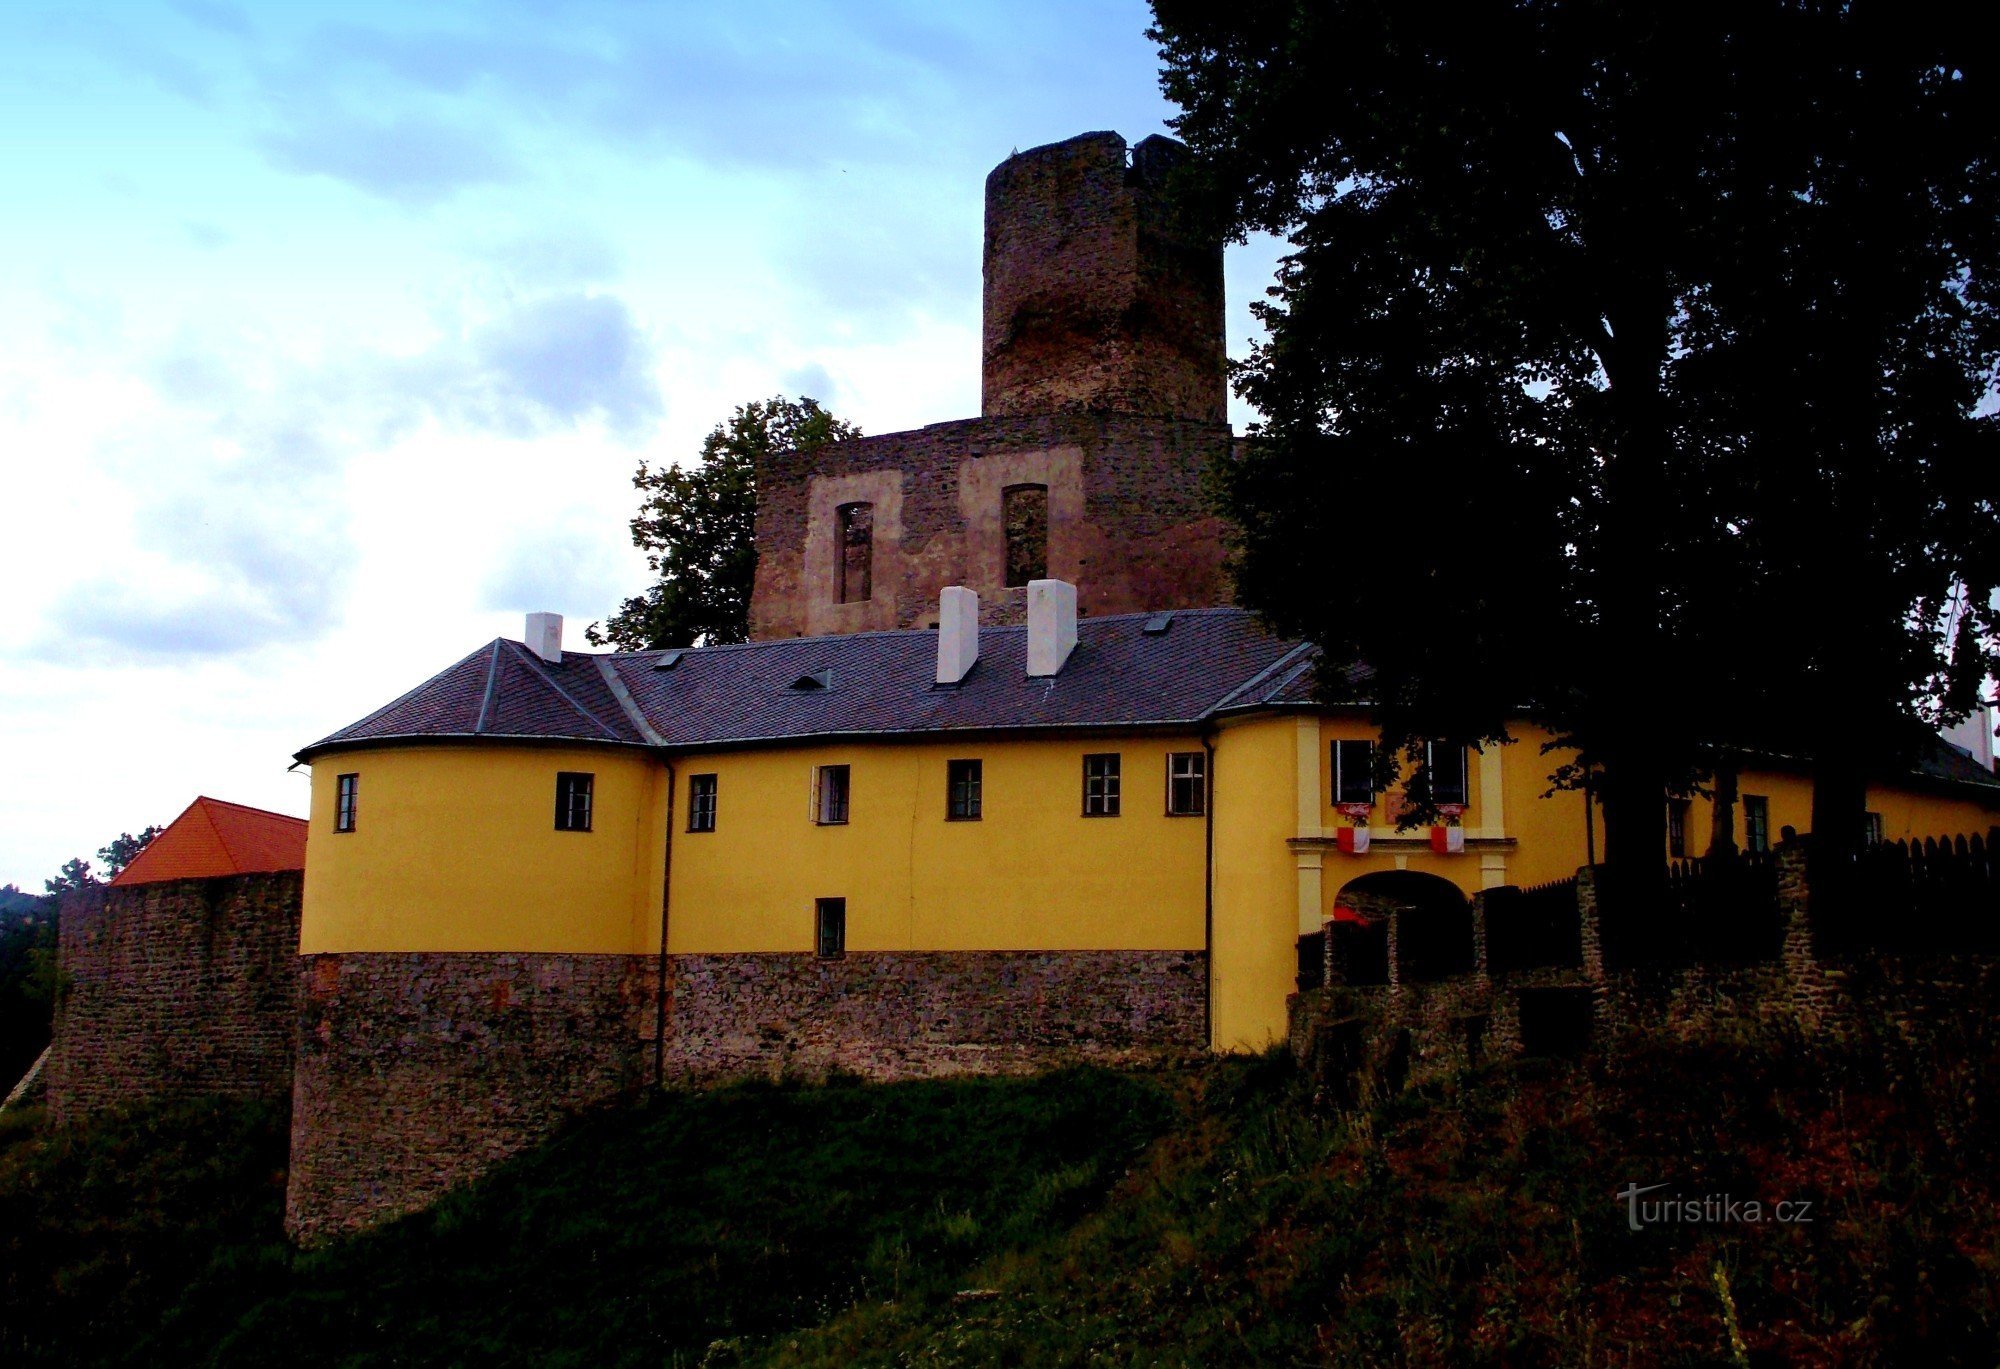 Svojanov slott